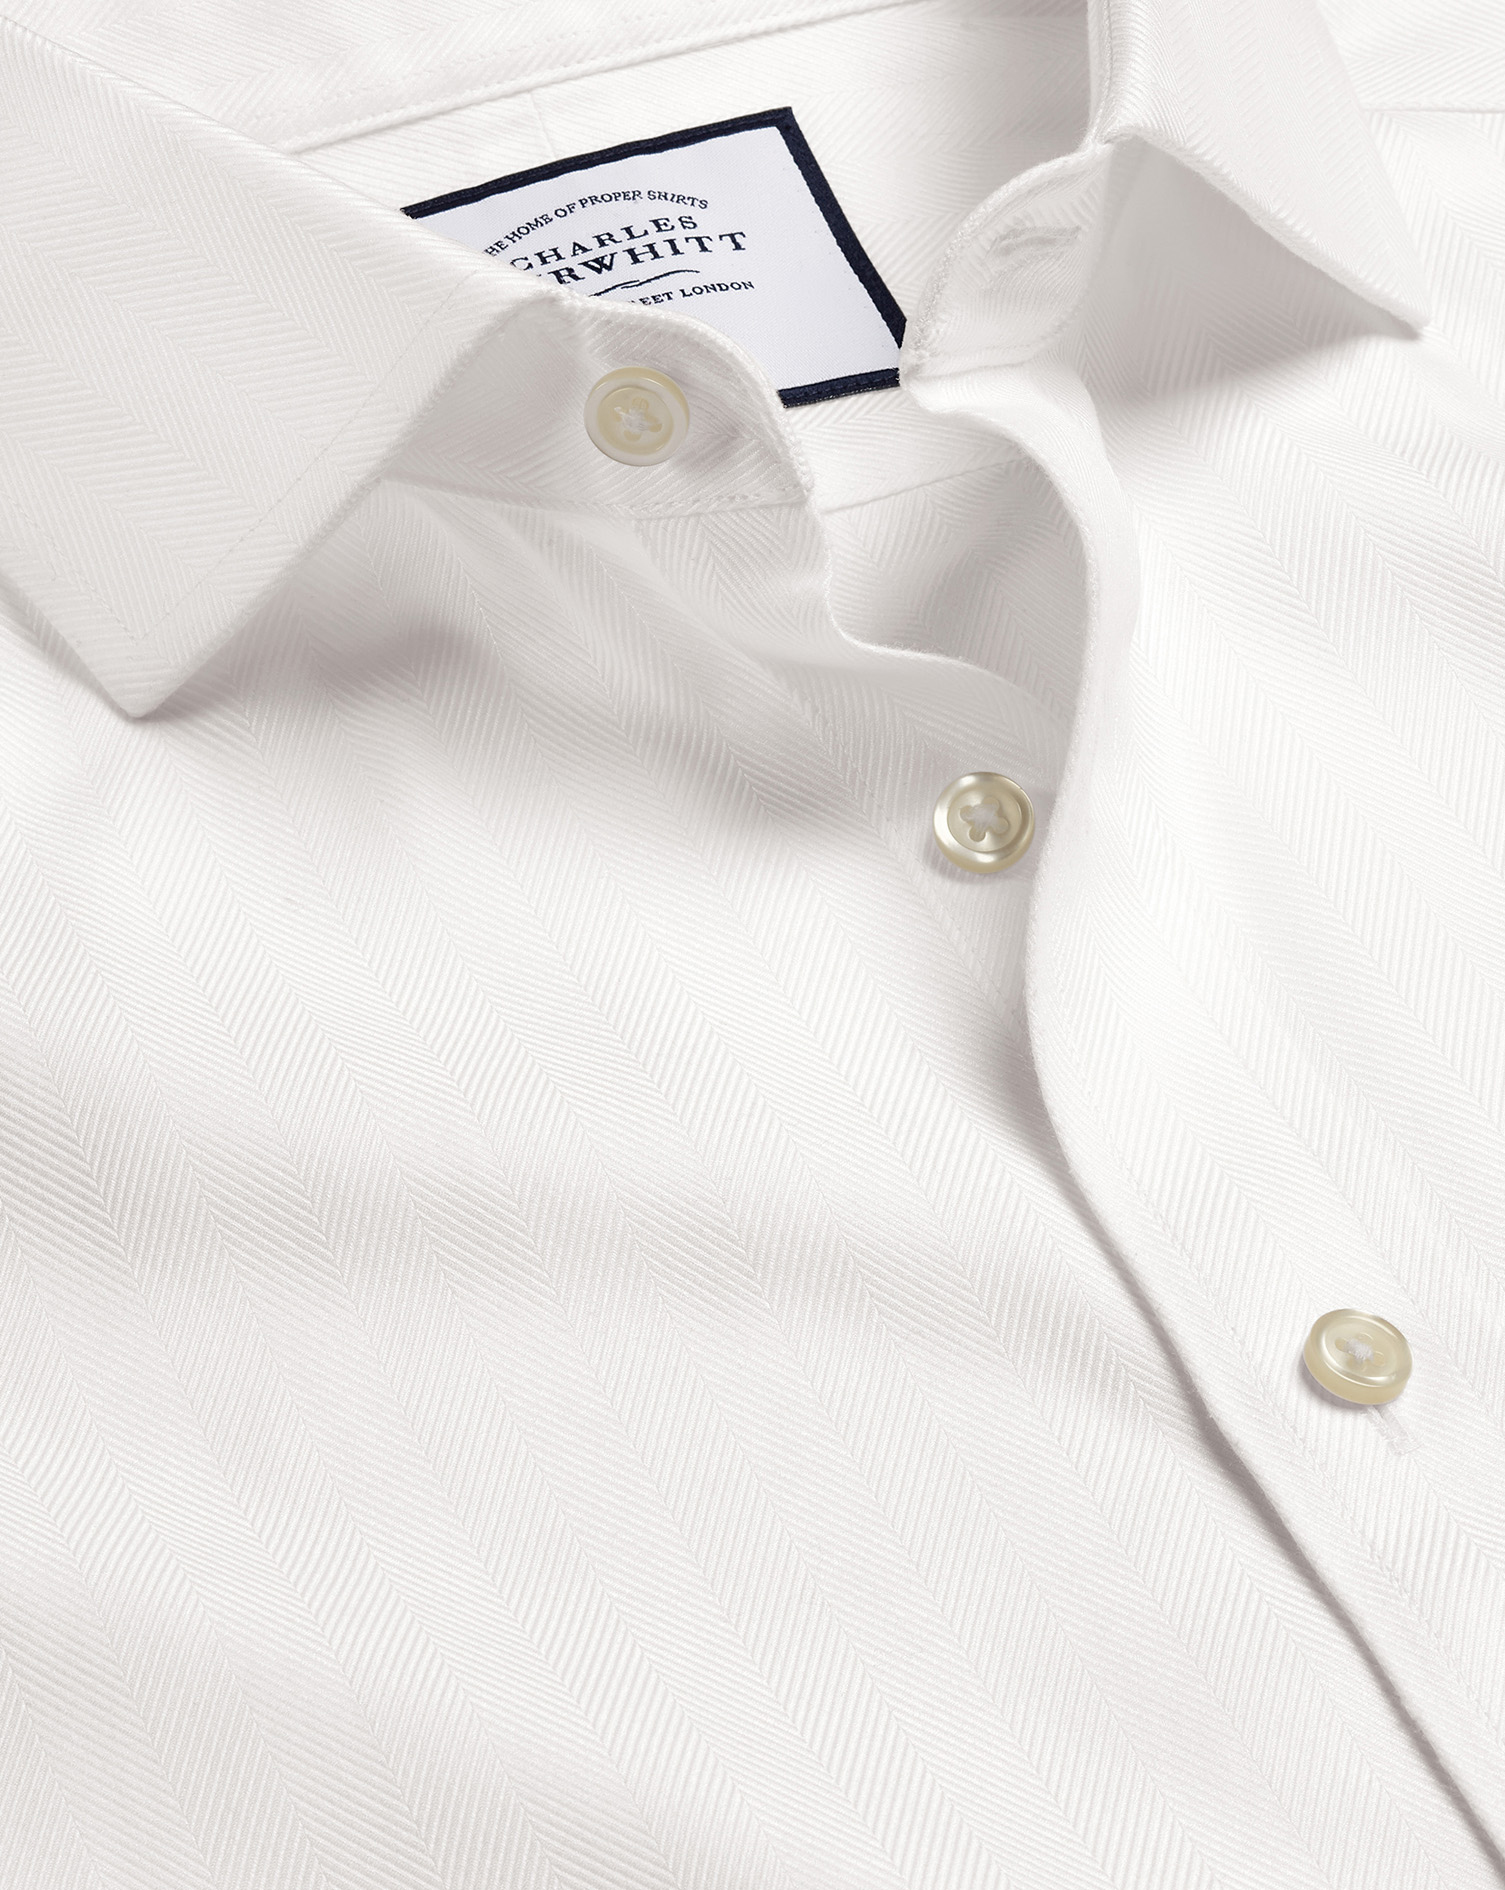 Men's Charles Tyrwhitt Cutaway Collar Non-Iron Herringbone Dress Shirt - Ivory White French Cuff Siz